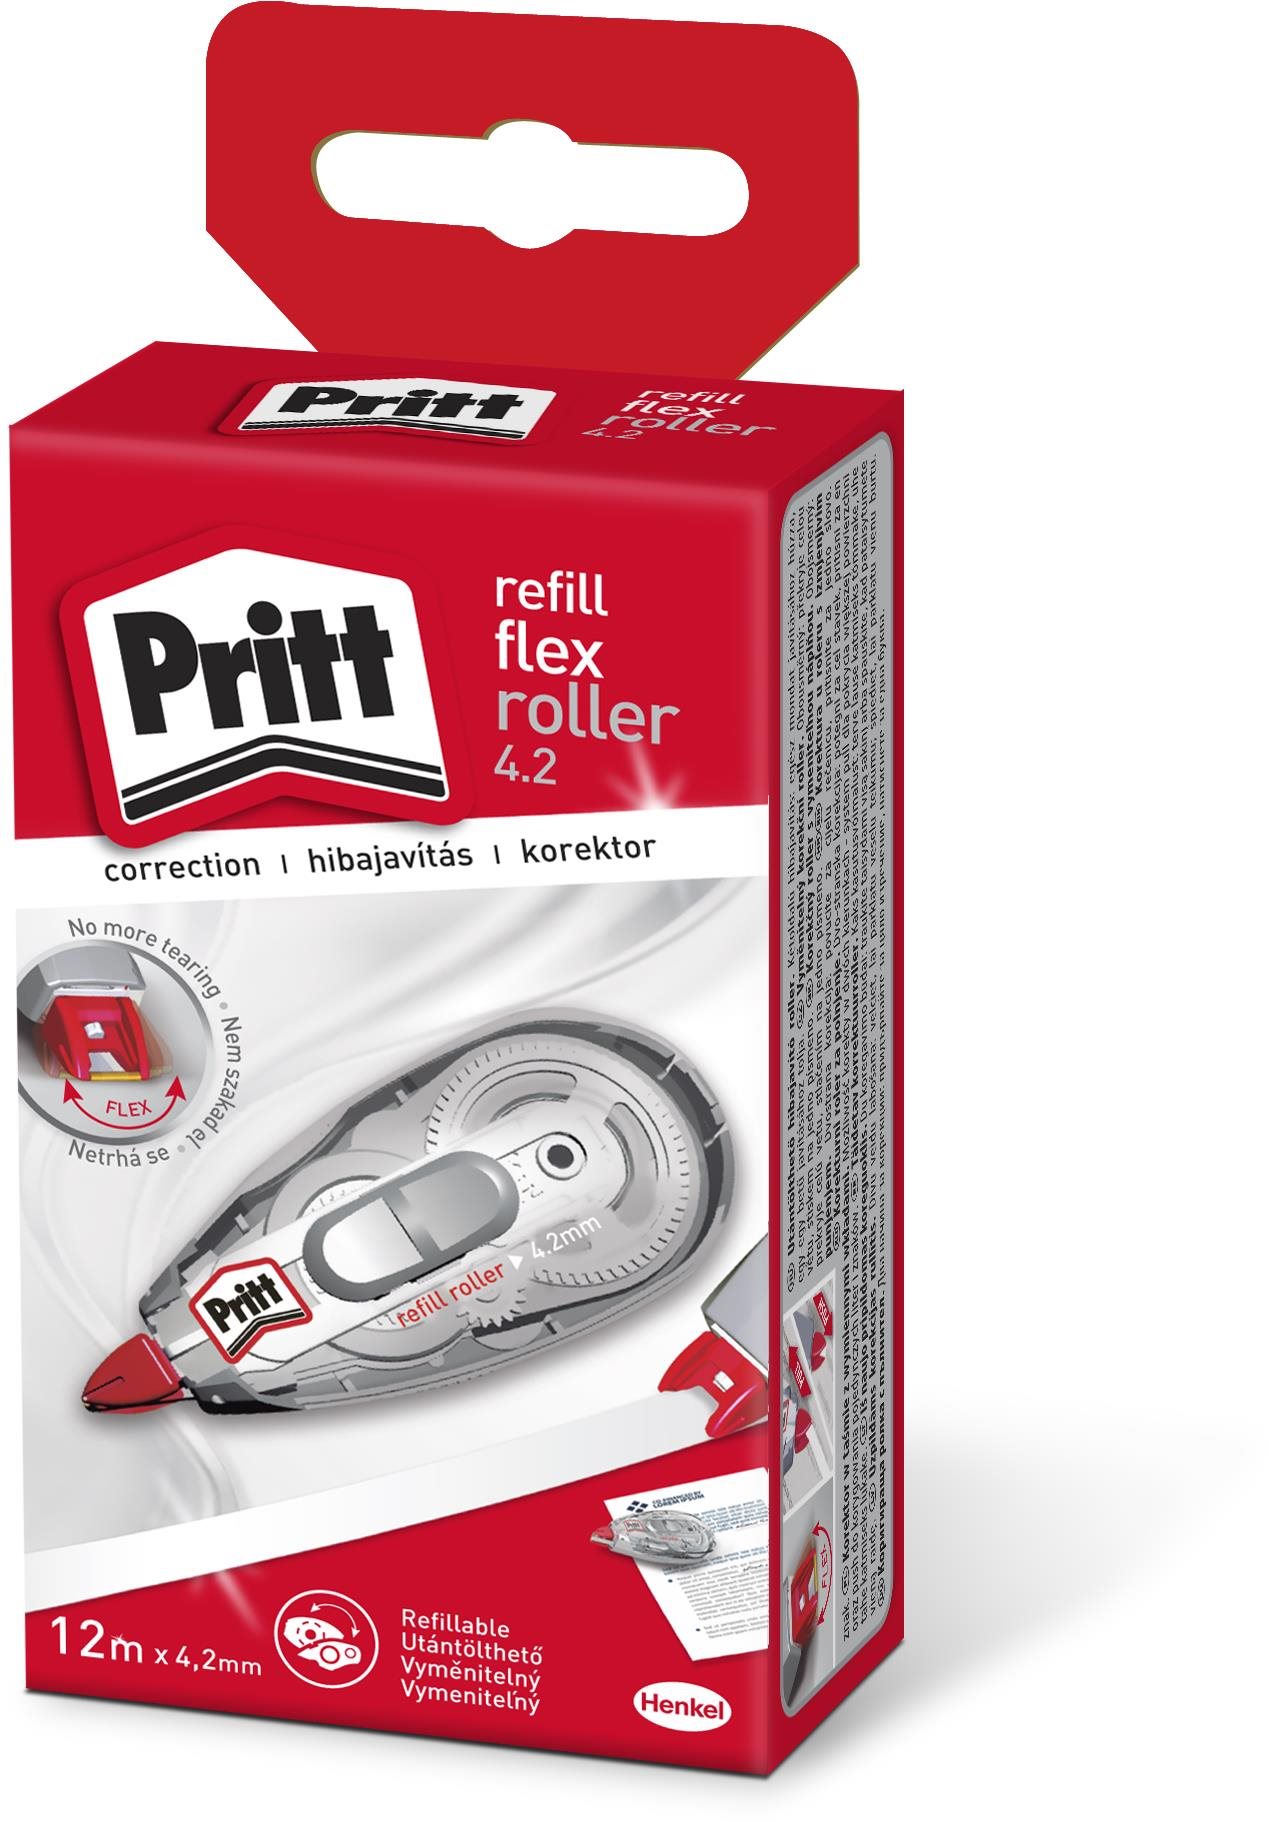 PRITT Hibajavító Flex roller cserélhető betéttel 12 m, 4,2 mm